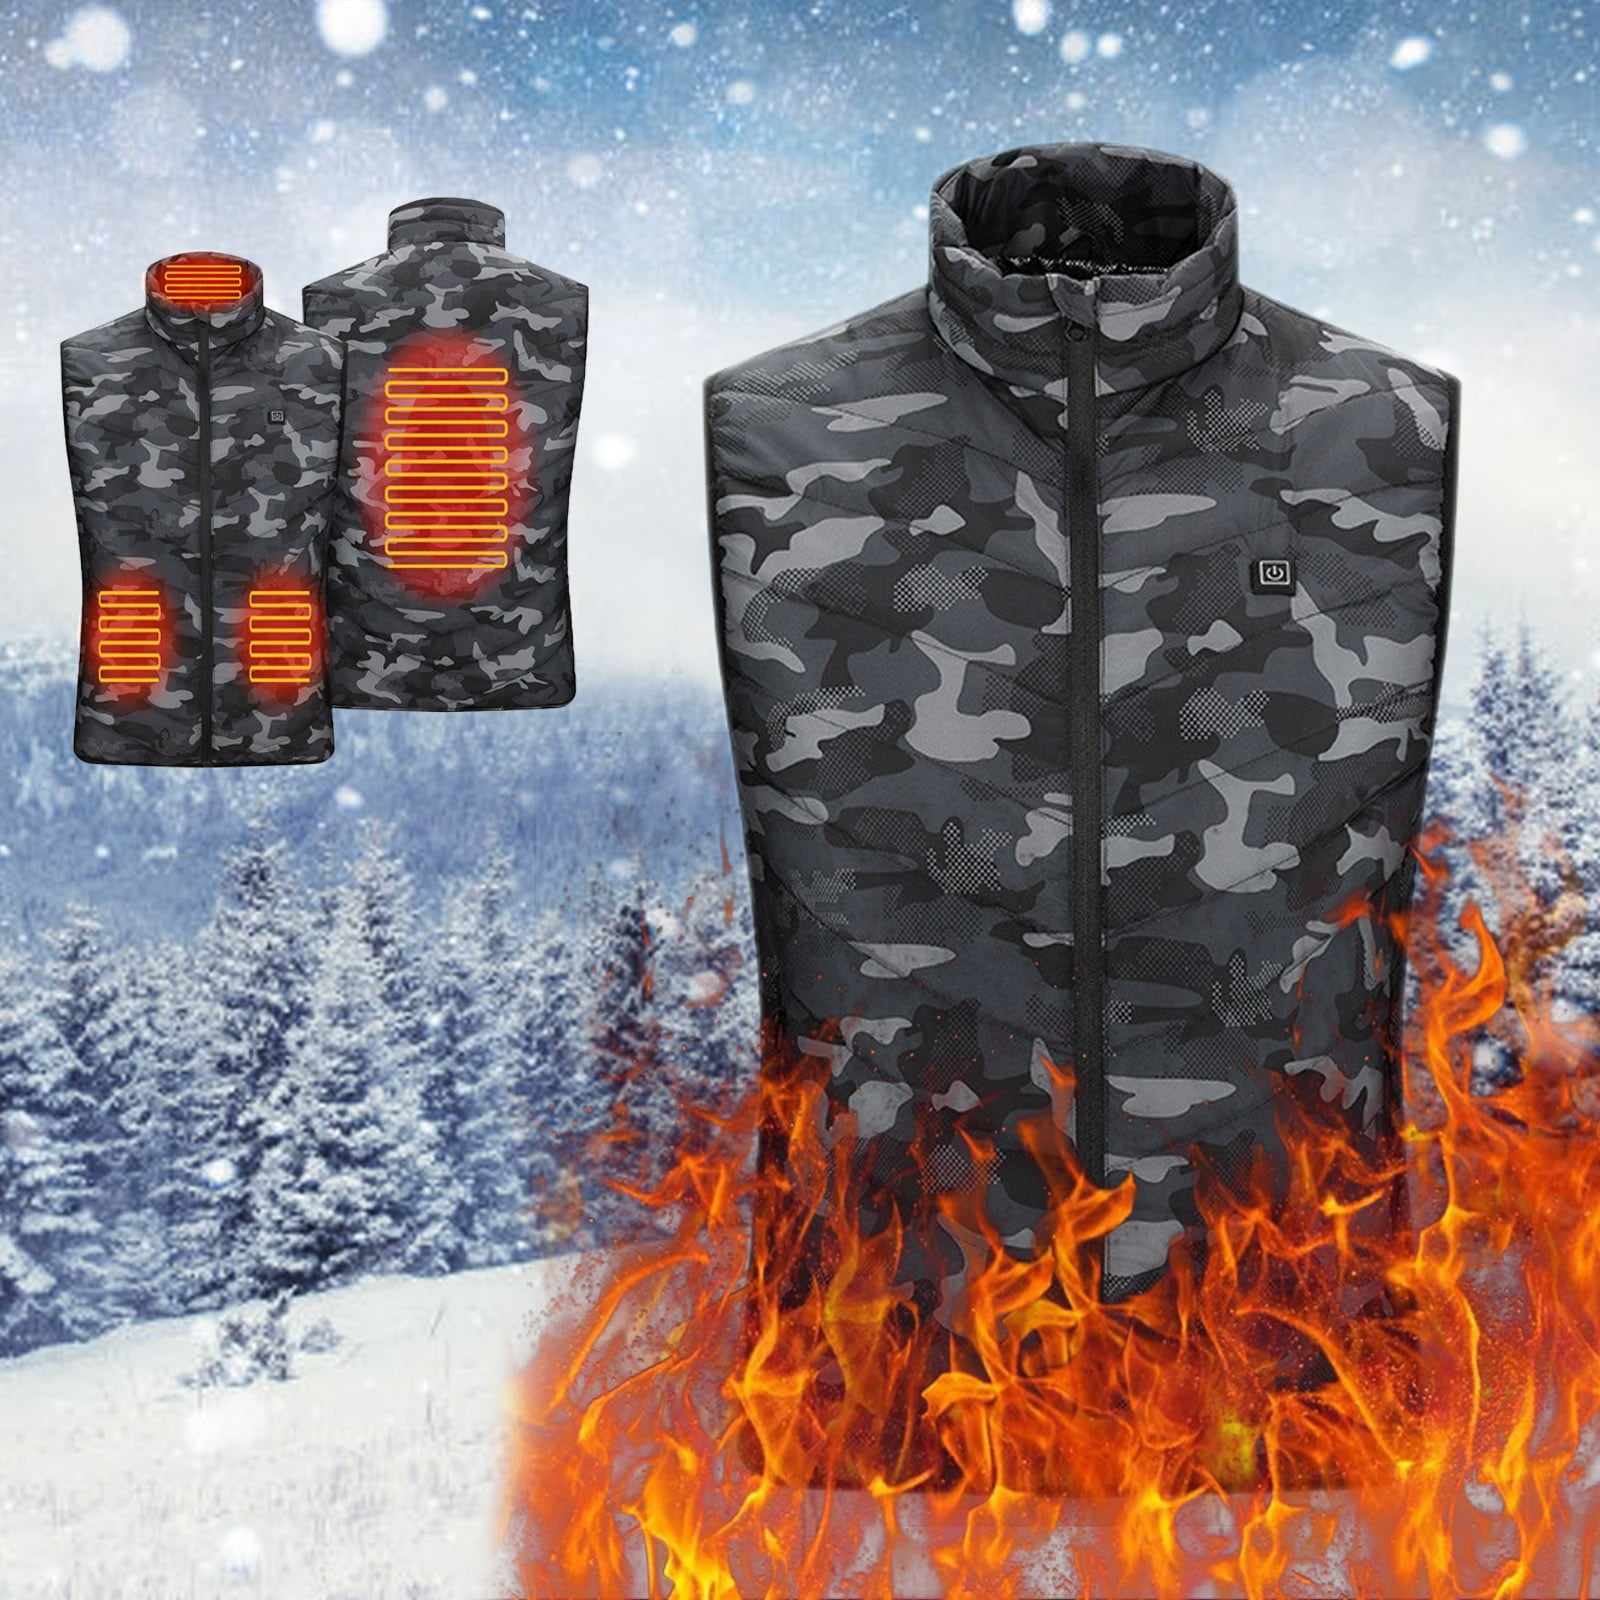 MRULIC winter coats for men Men's Zipper With Pocket Collar Warm